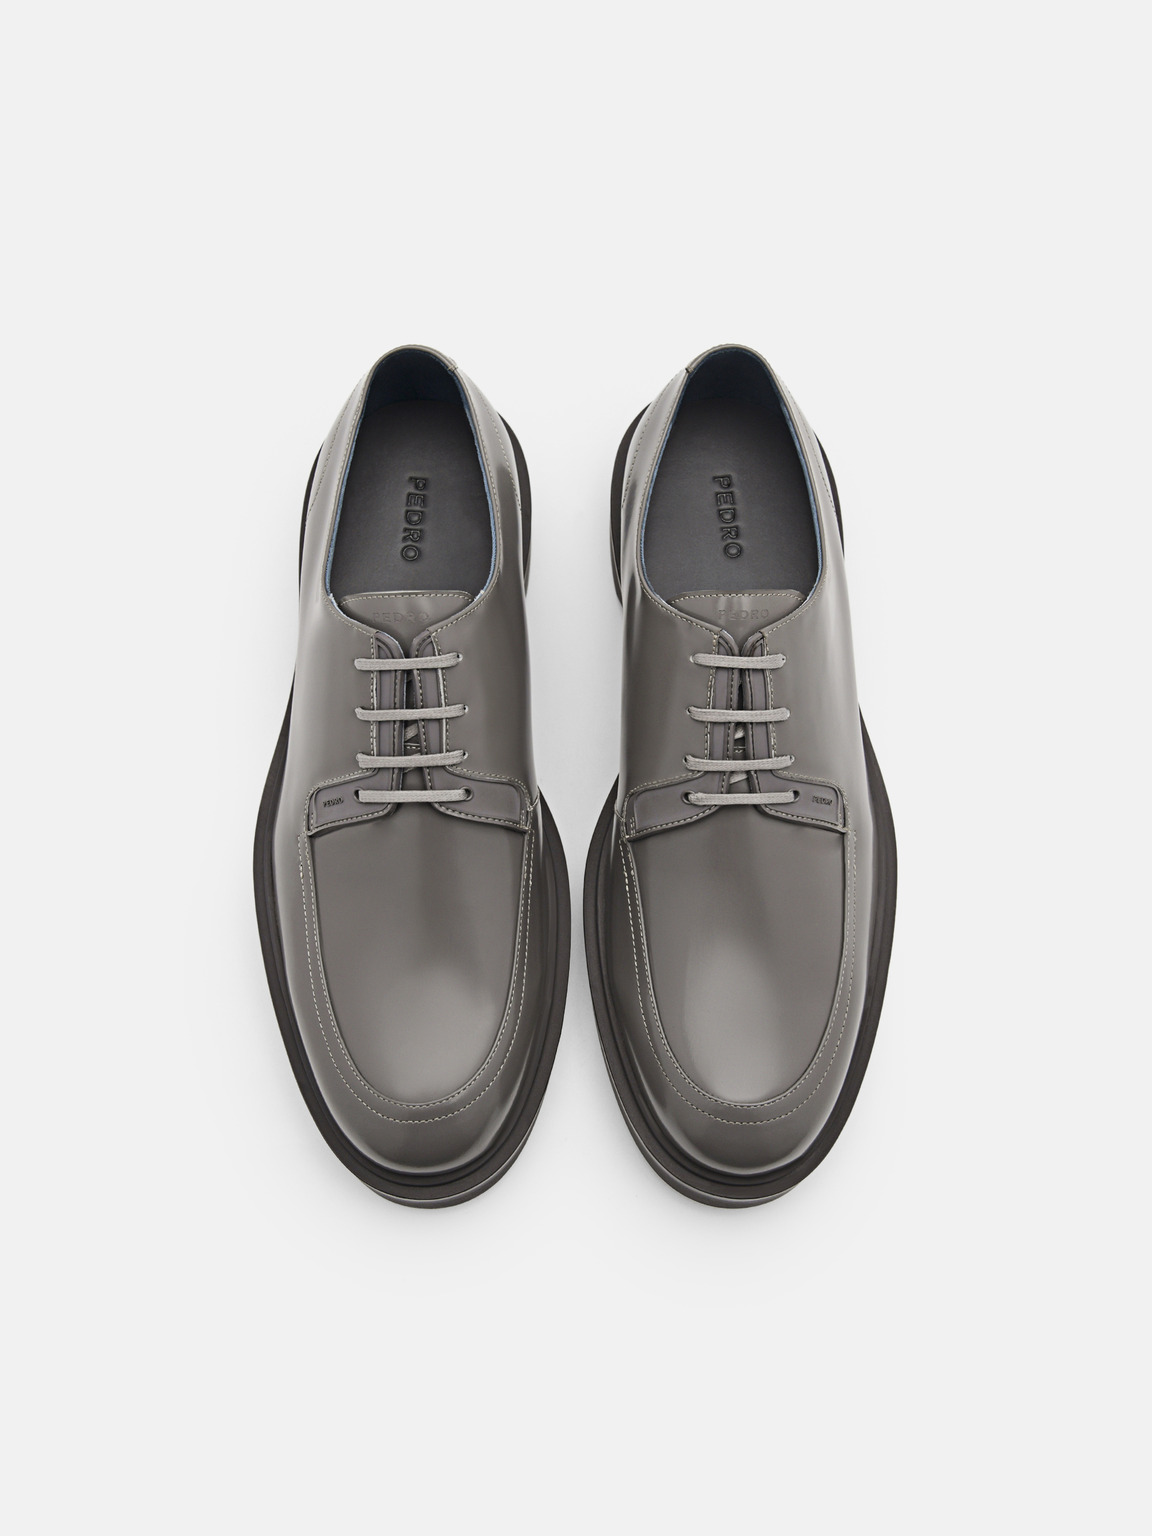 Loop Leather Derby Shoes, Dark Grey